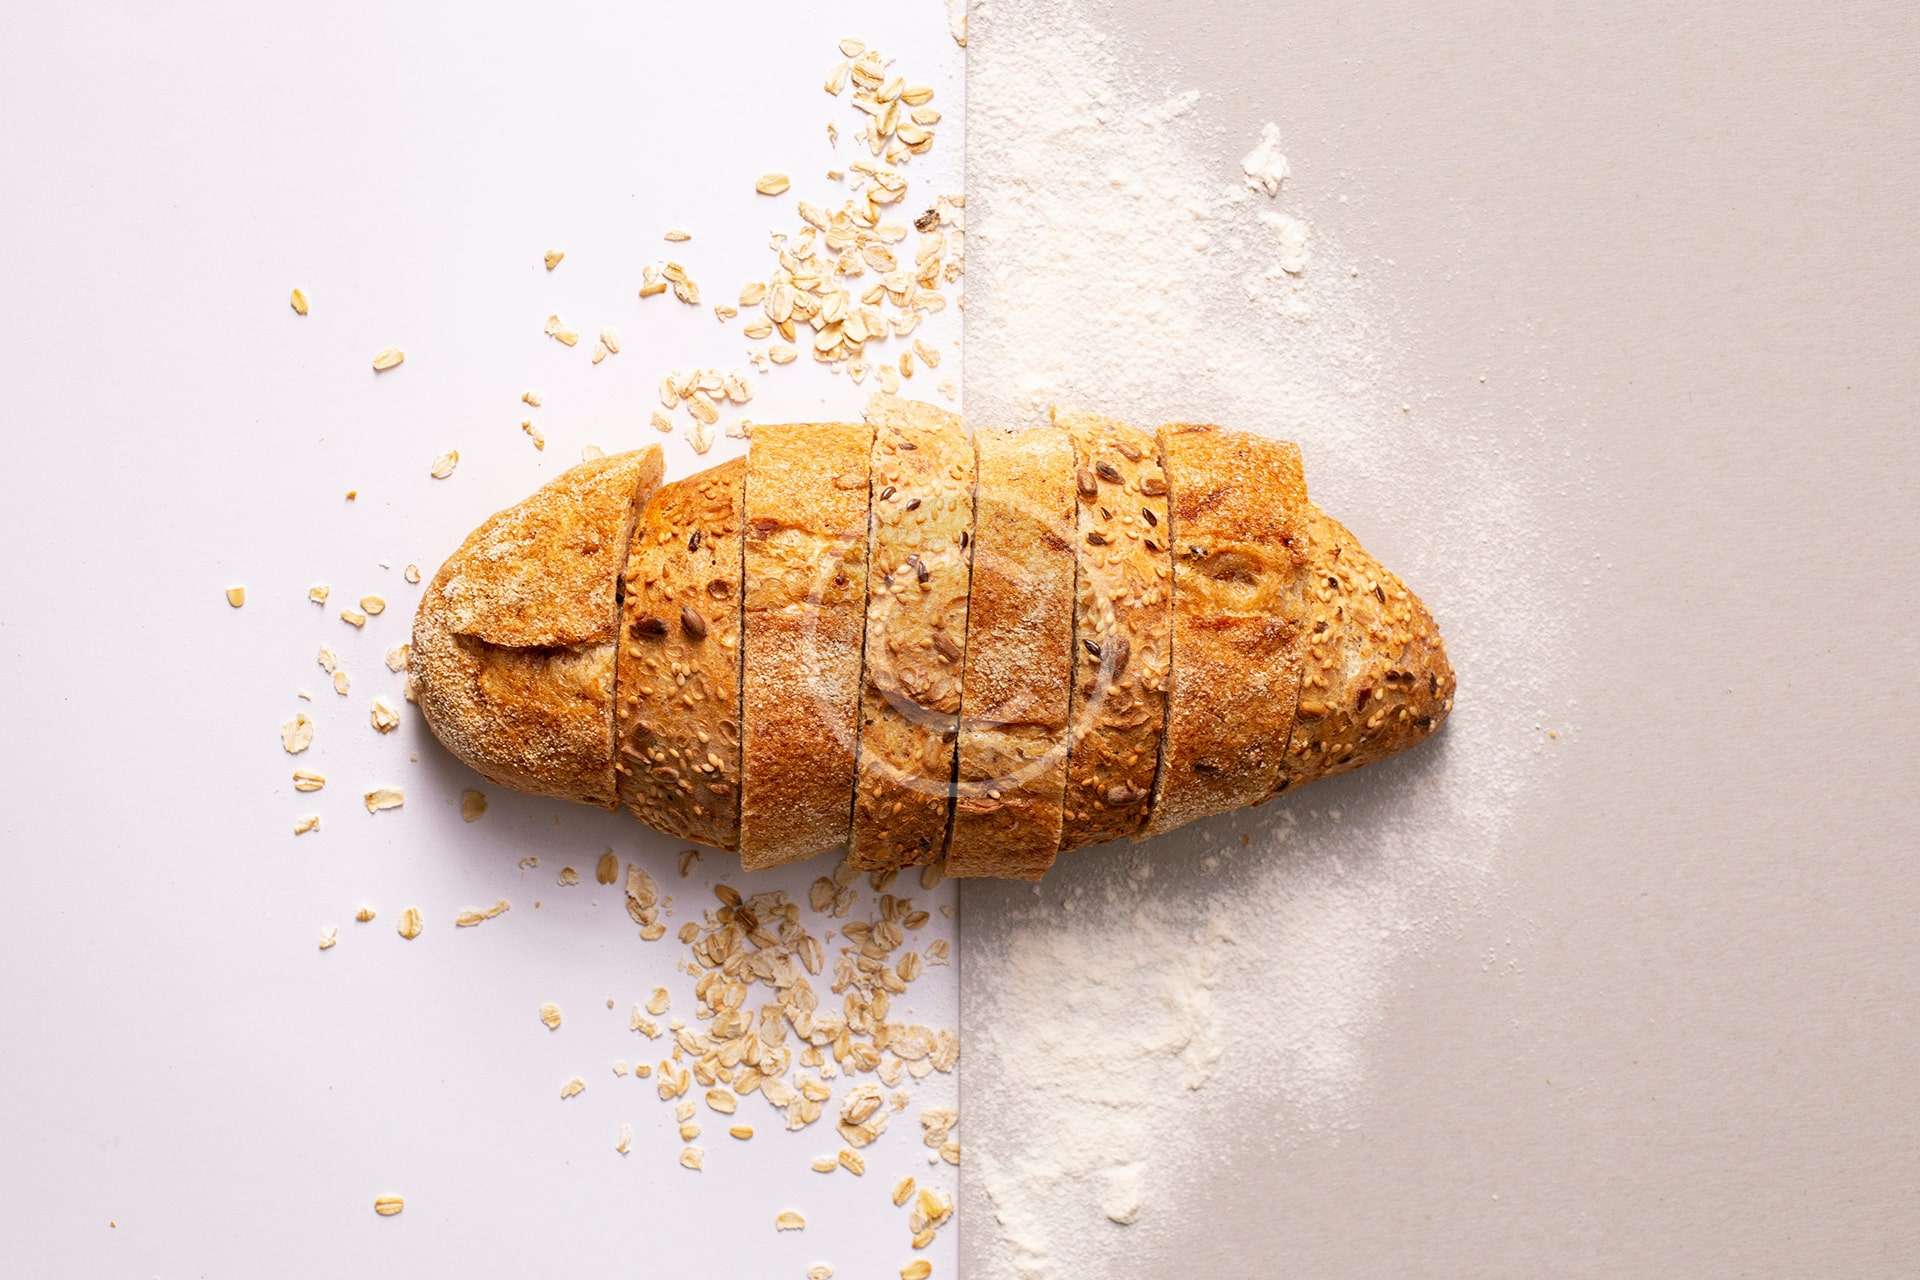 Whole-Grain Bread